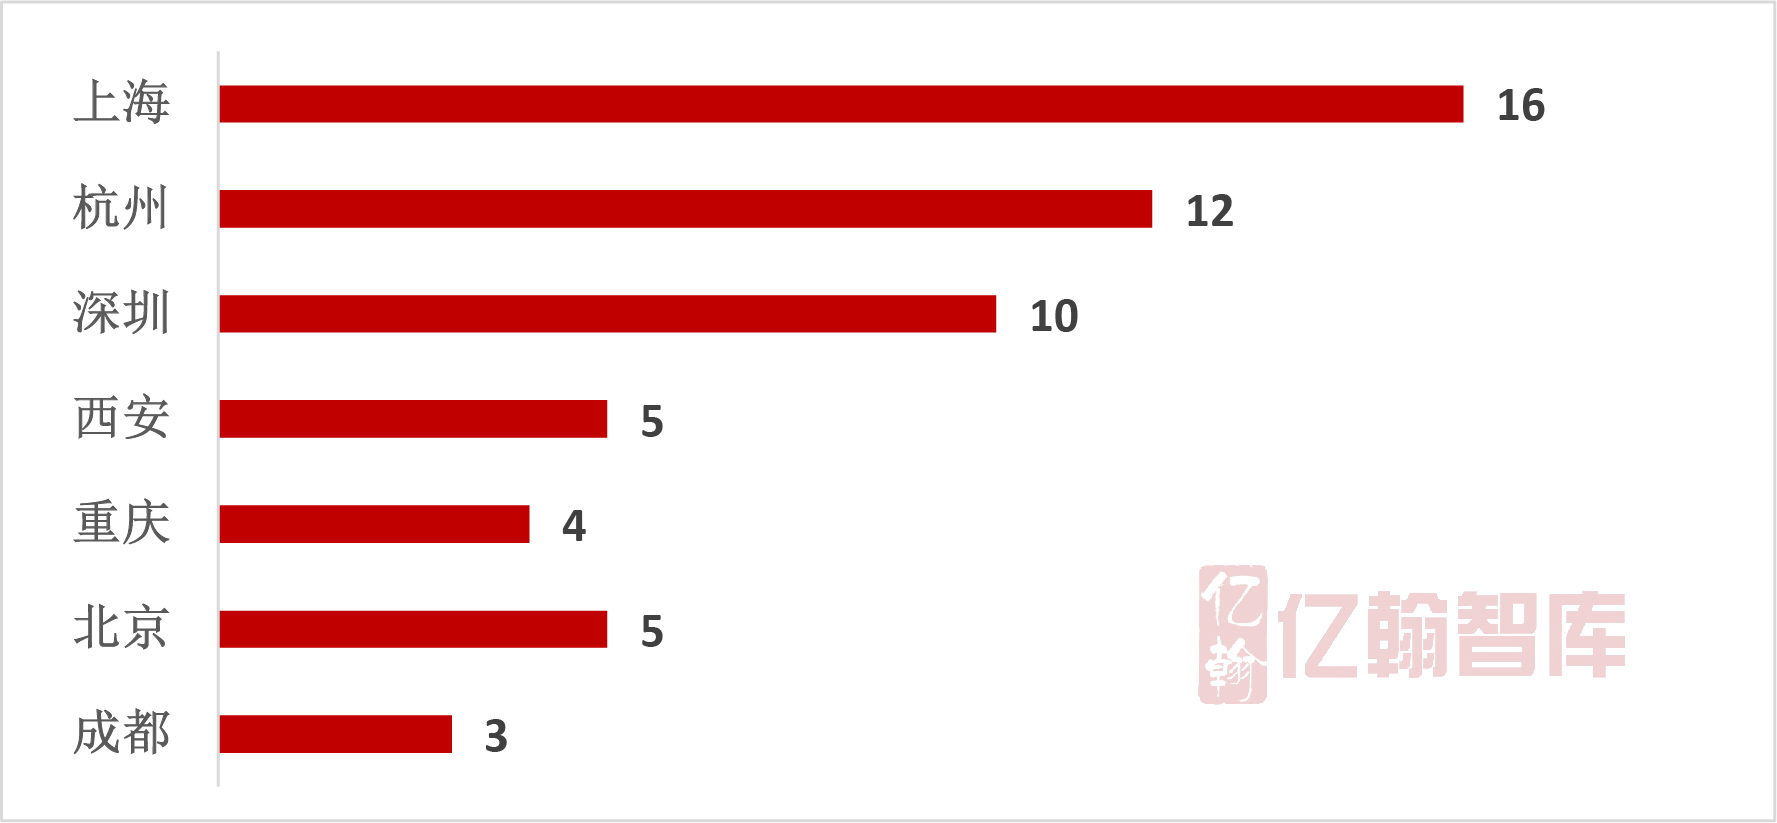 2018年1-8月中国典型房企单项目销售业绩TOP100 “金九”好戏欲提前上演-中国网地产